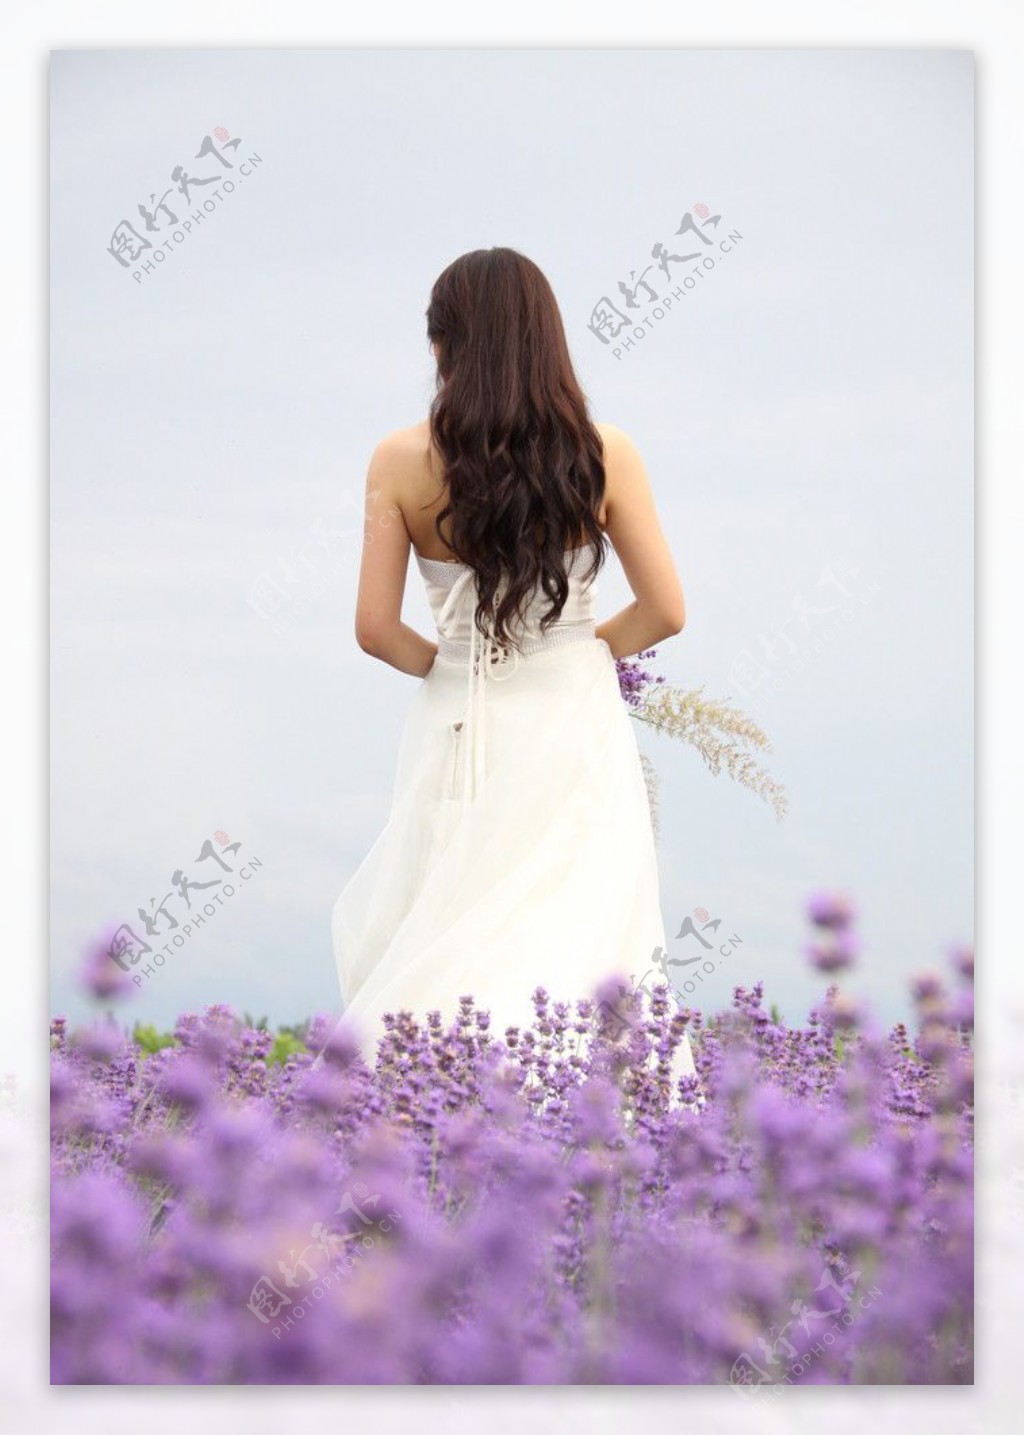 小清新唯美薰衣草风景植物等待爱情紫色高清壁纸 - tt98图片网